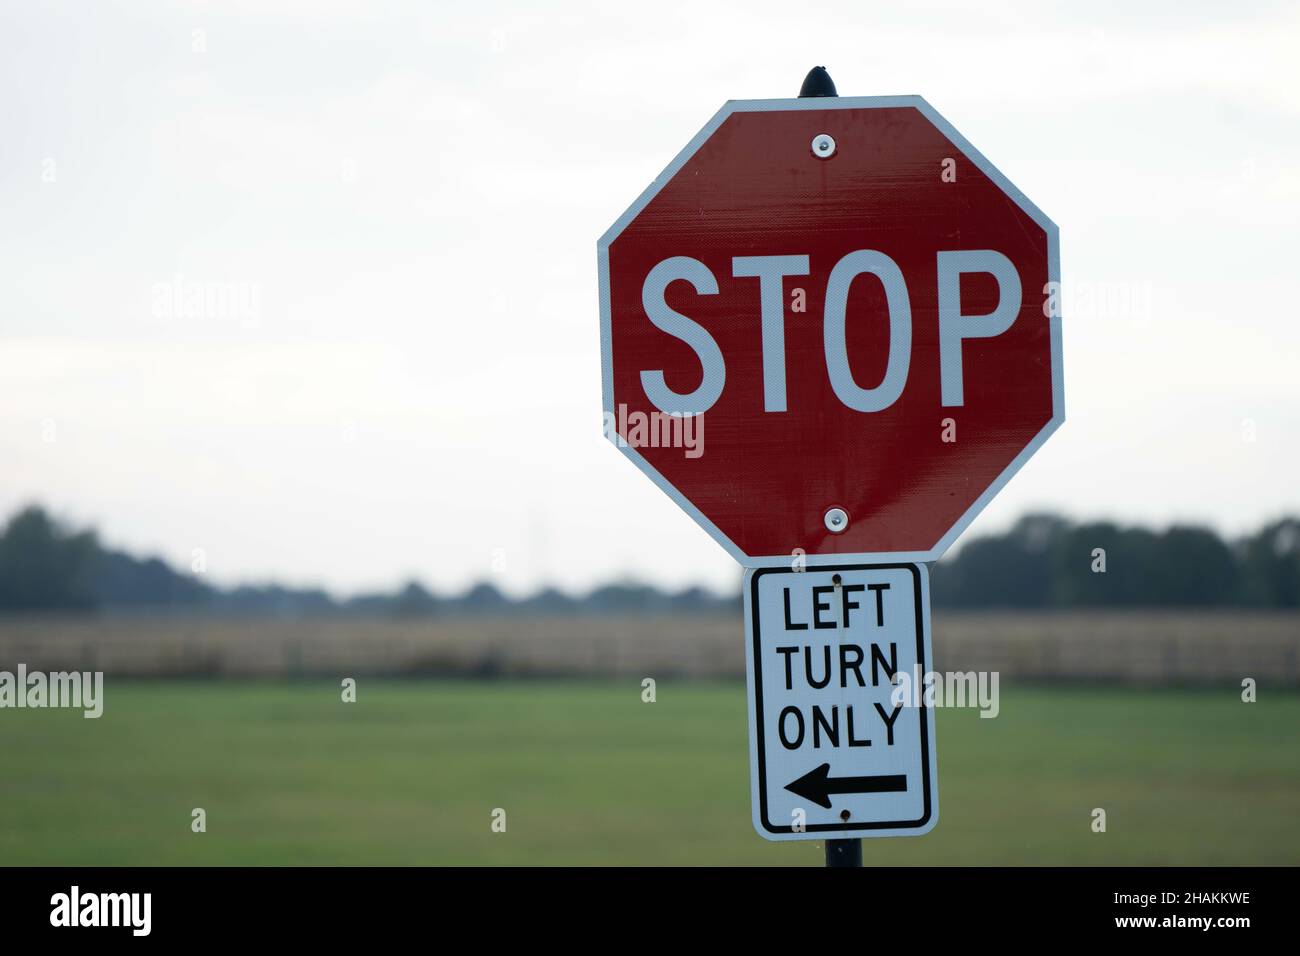 Señal roja de stop con un giro a la izquierda sólo en dirección a una carretera rural Foto de stock